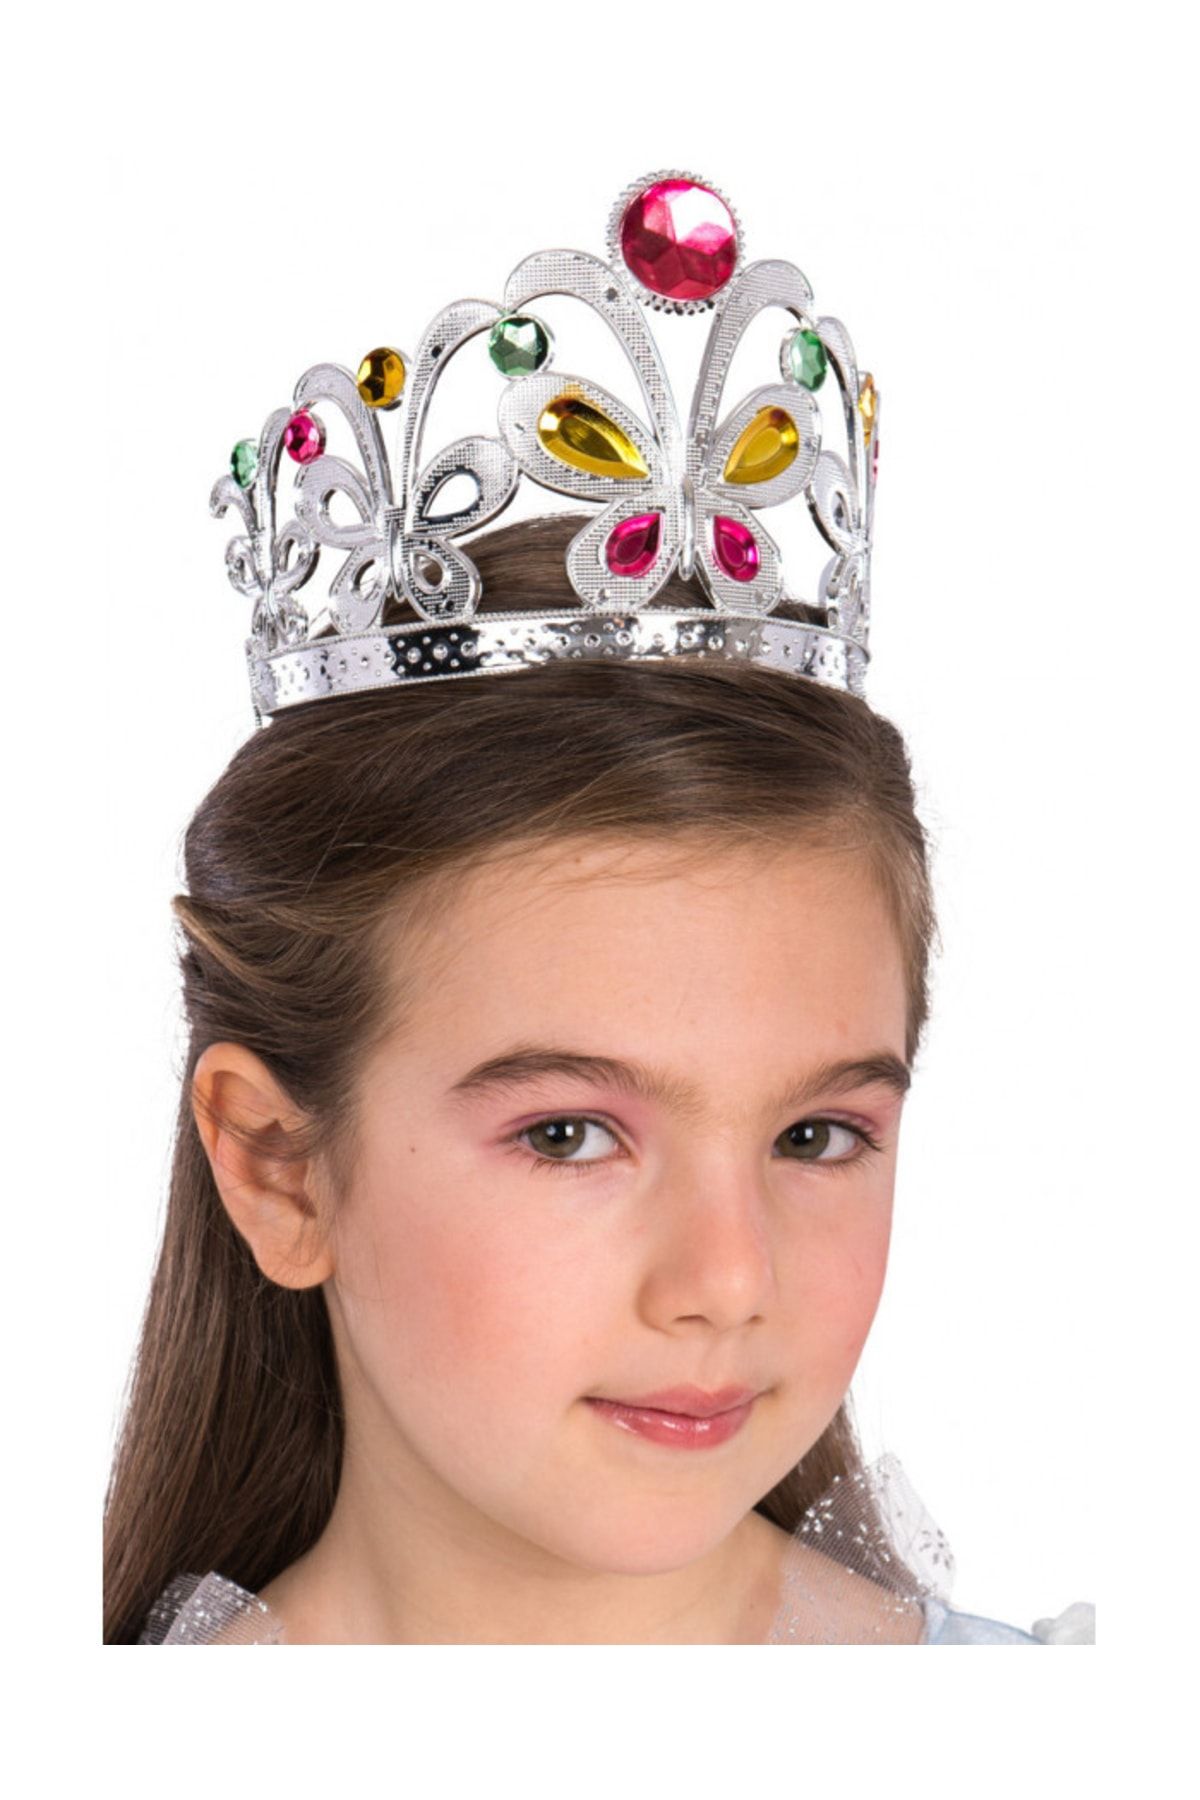 KAYAMU Çocuklar Için Kraliçe Tacı - Çocuk Prenses Tacı Gümüş Renk